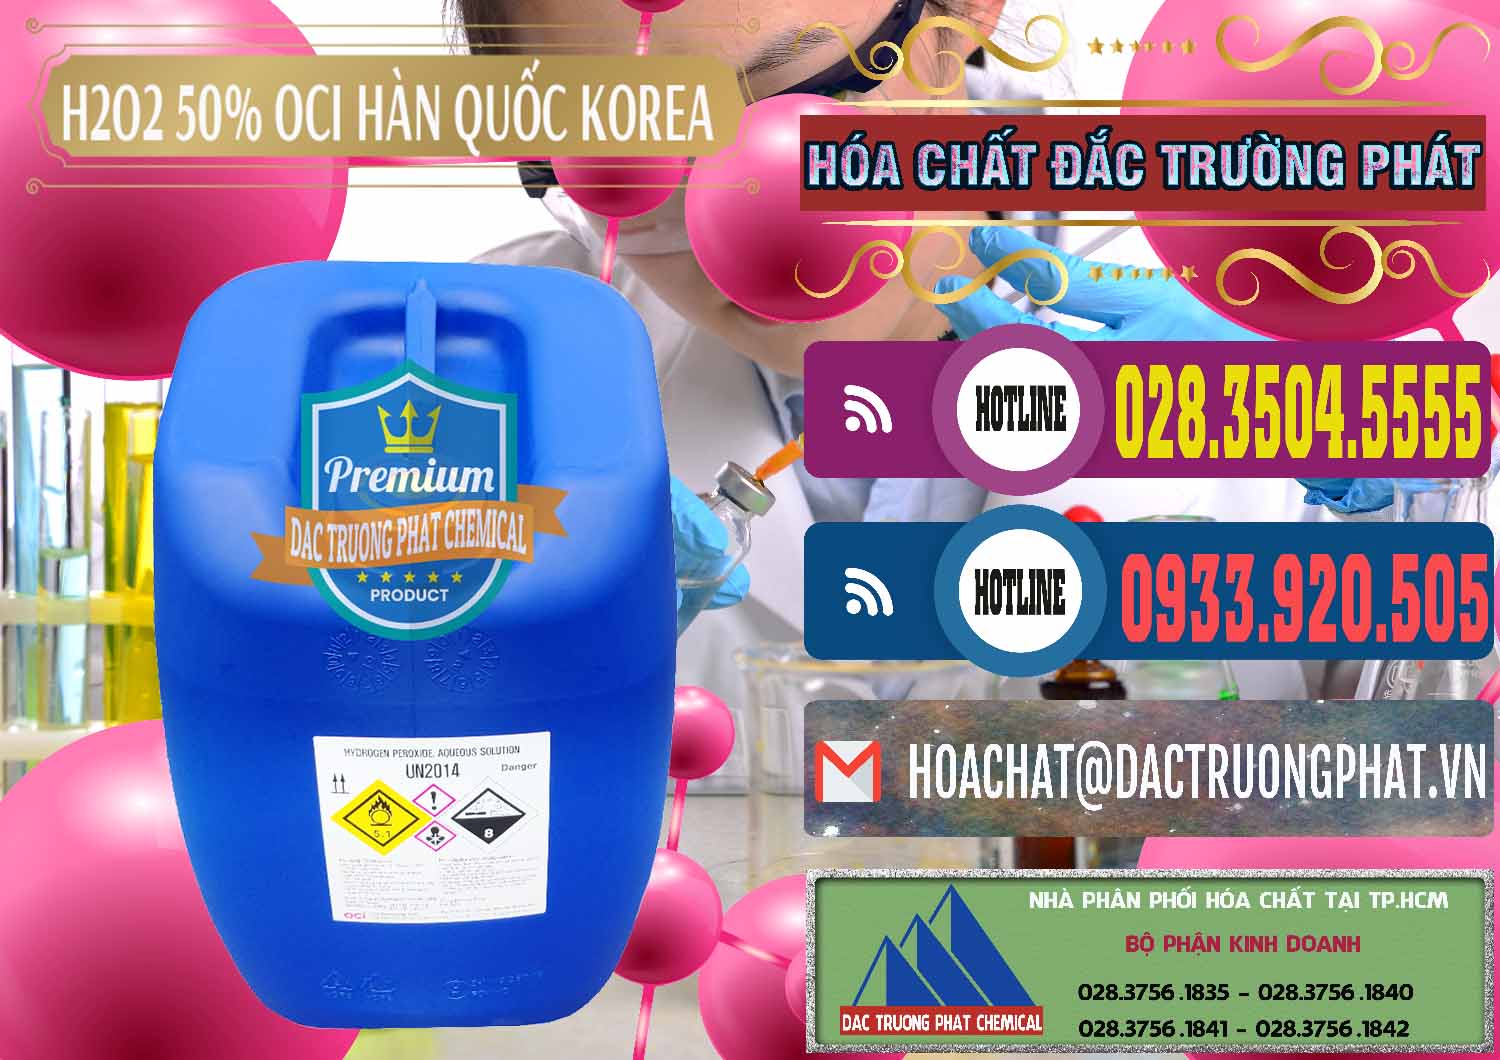 Cty chuyên bán _ phân phối H2O2 - Hydrogen Peroxide 50% OCI Hàn Quốc Korea - 0075 - Công ty chuyên bán & phân phối hóa chất tại TP.HCM - muabanhoachat.com.vn